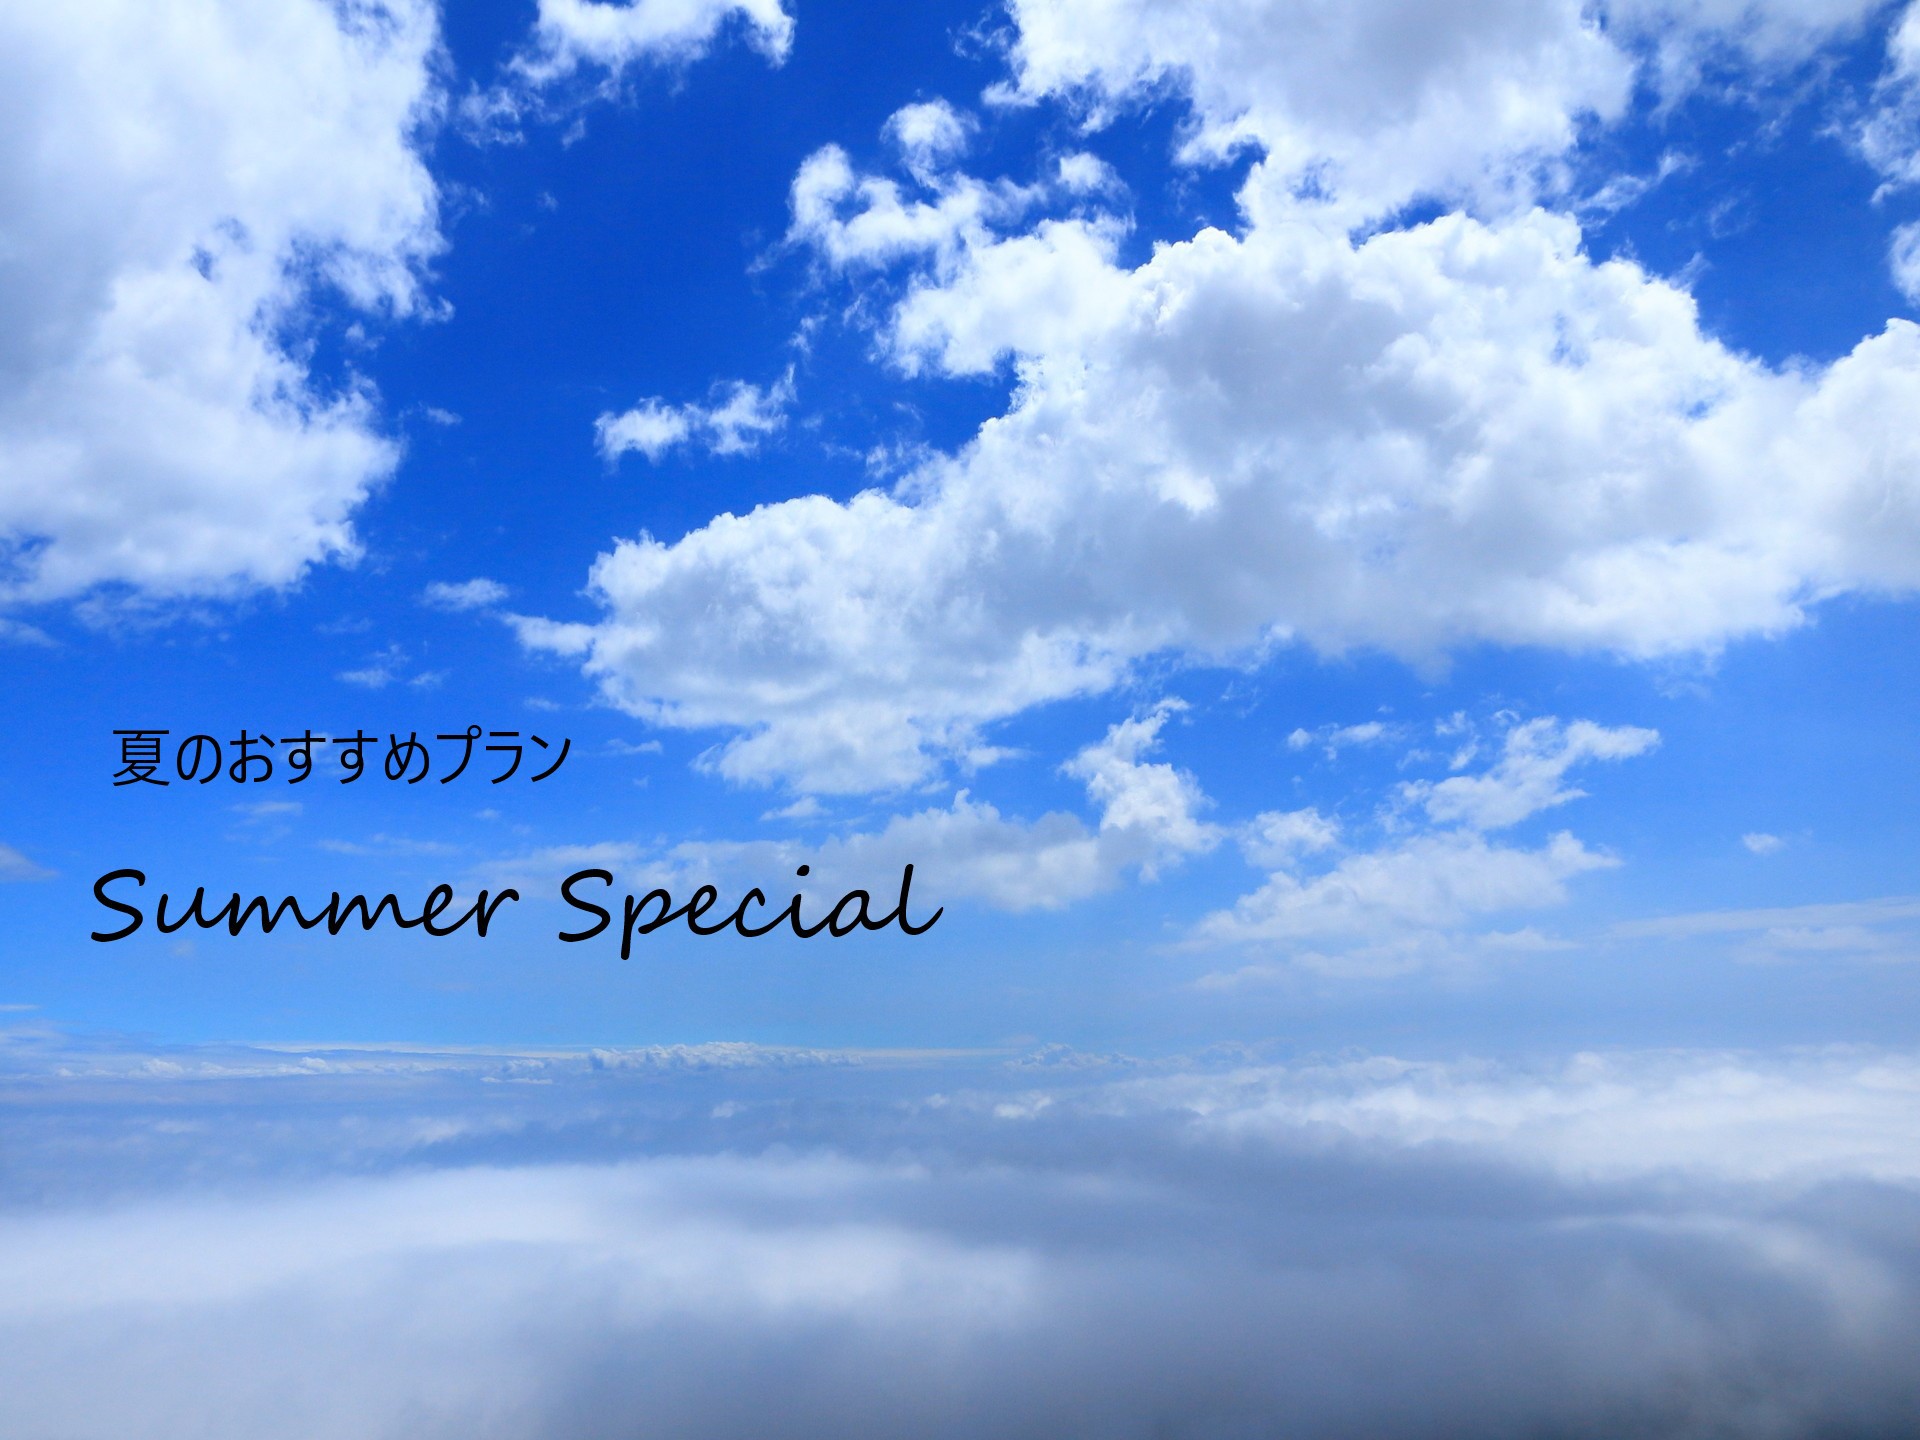 【季節割】夏から初秋の期間販売『Summer Special』(食事なし)JR函館駅より徒歩1分